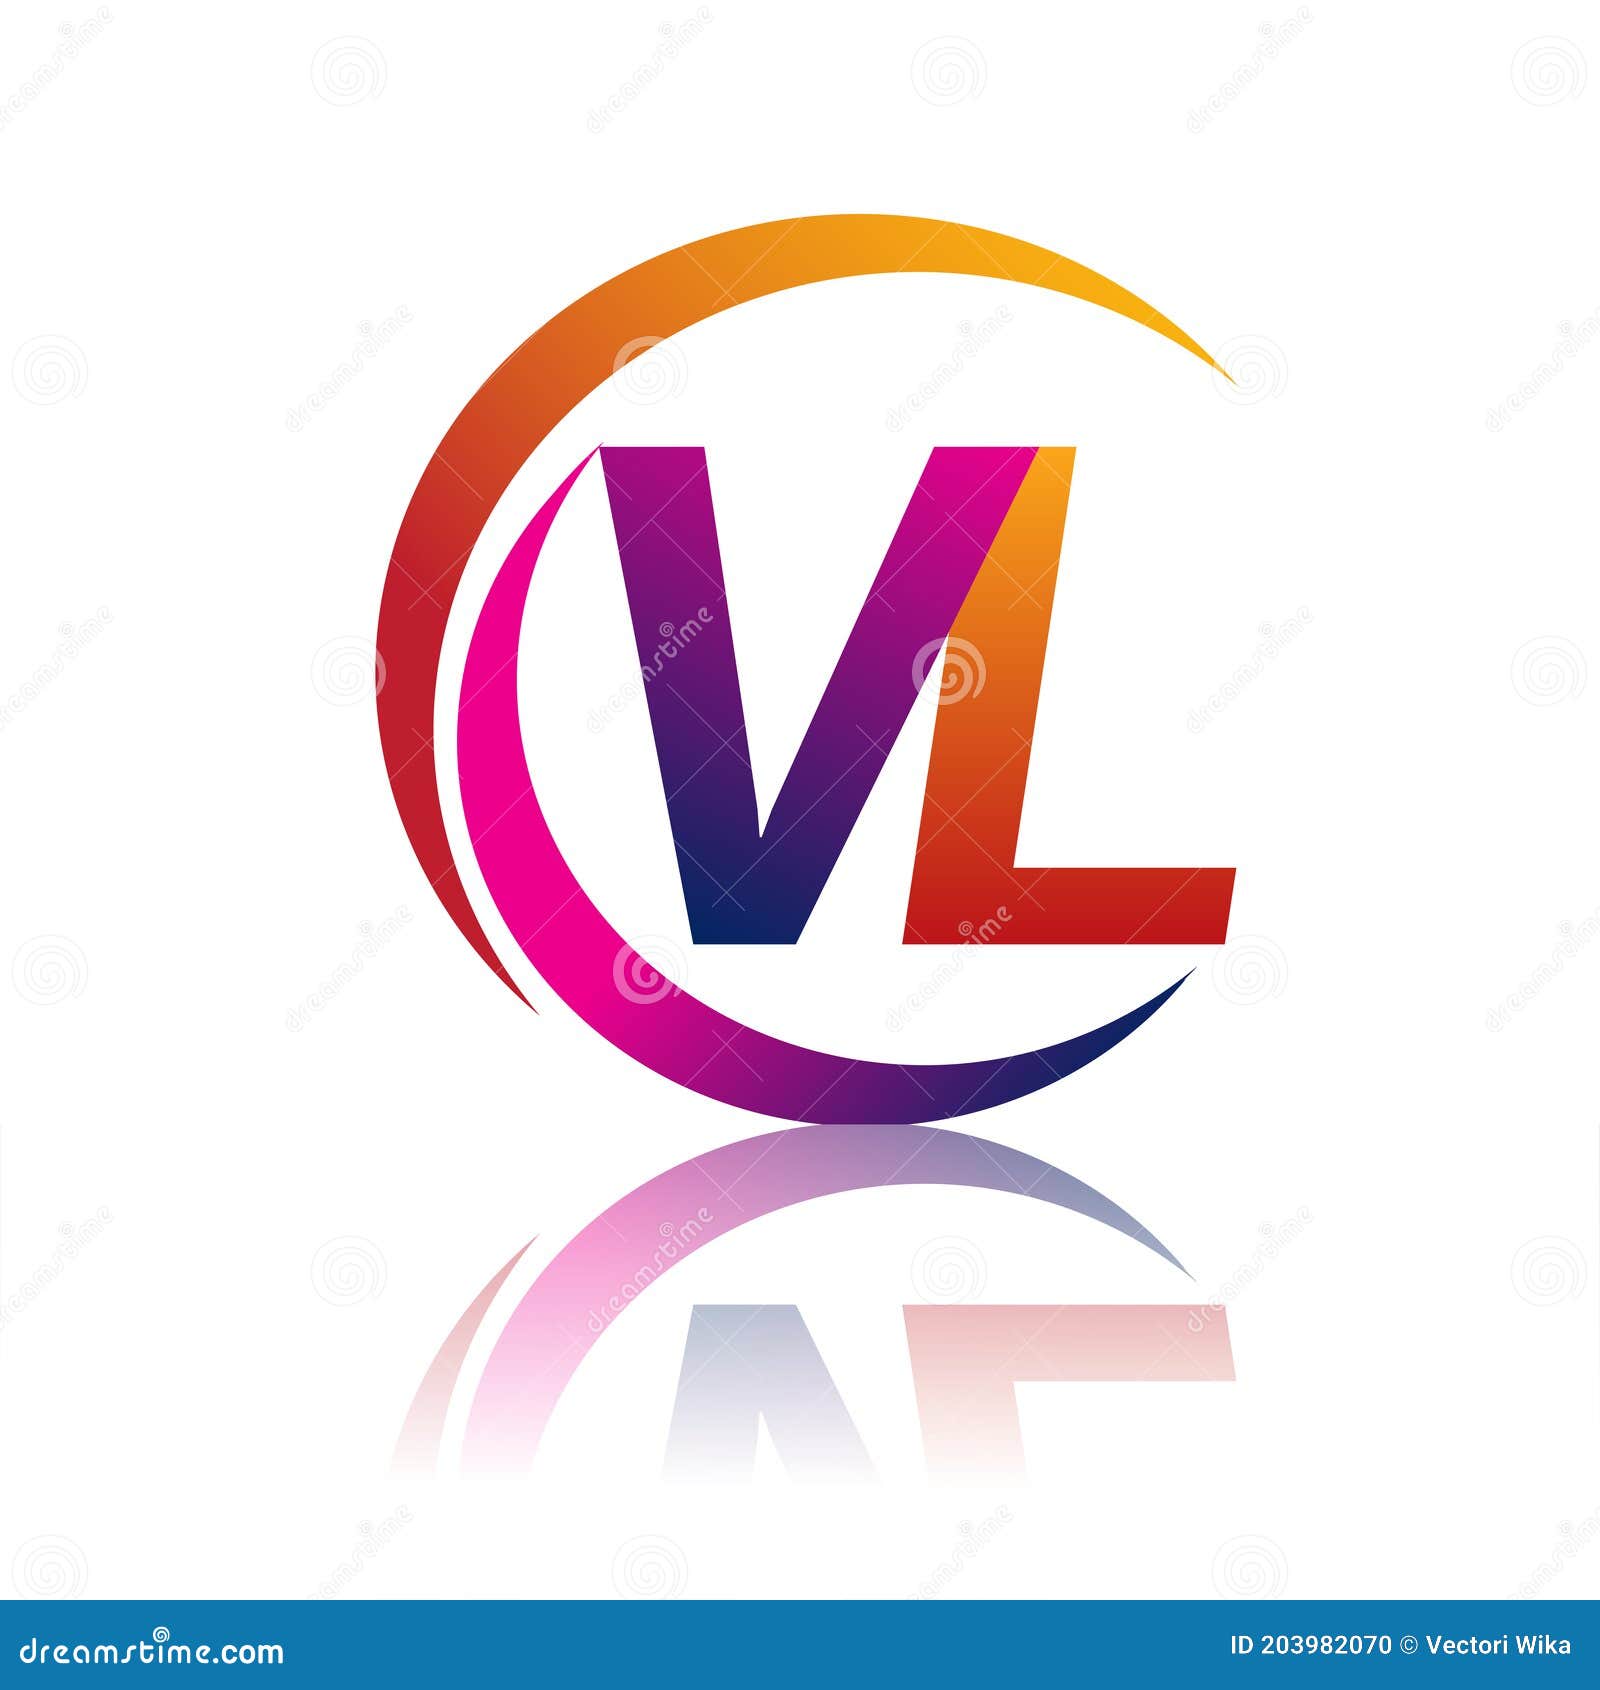 company name vl logo